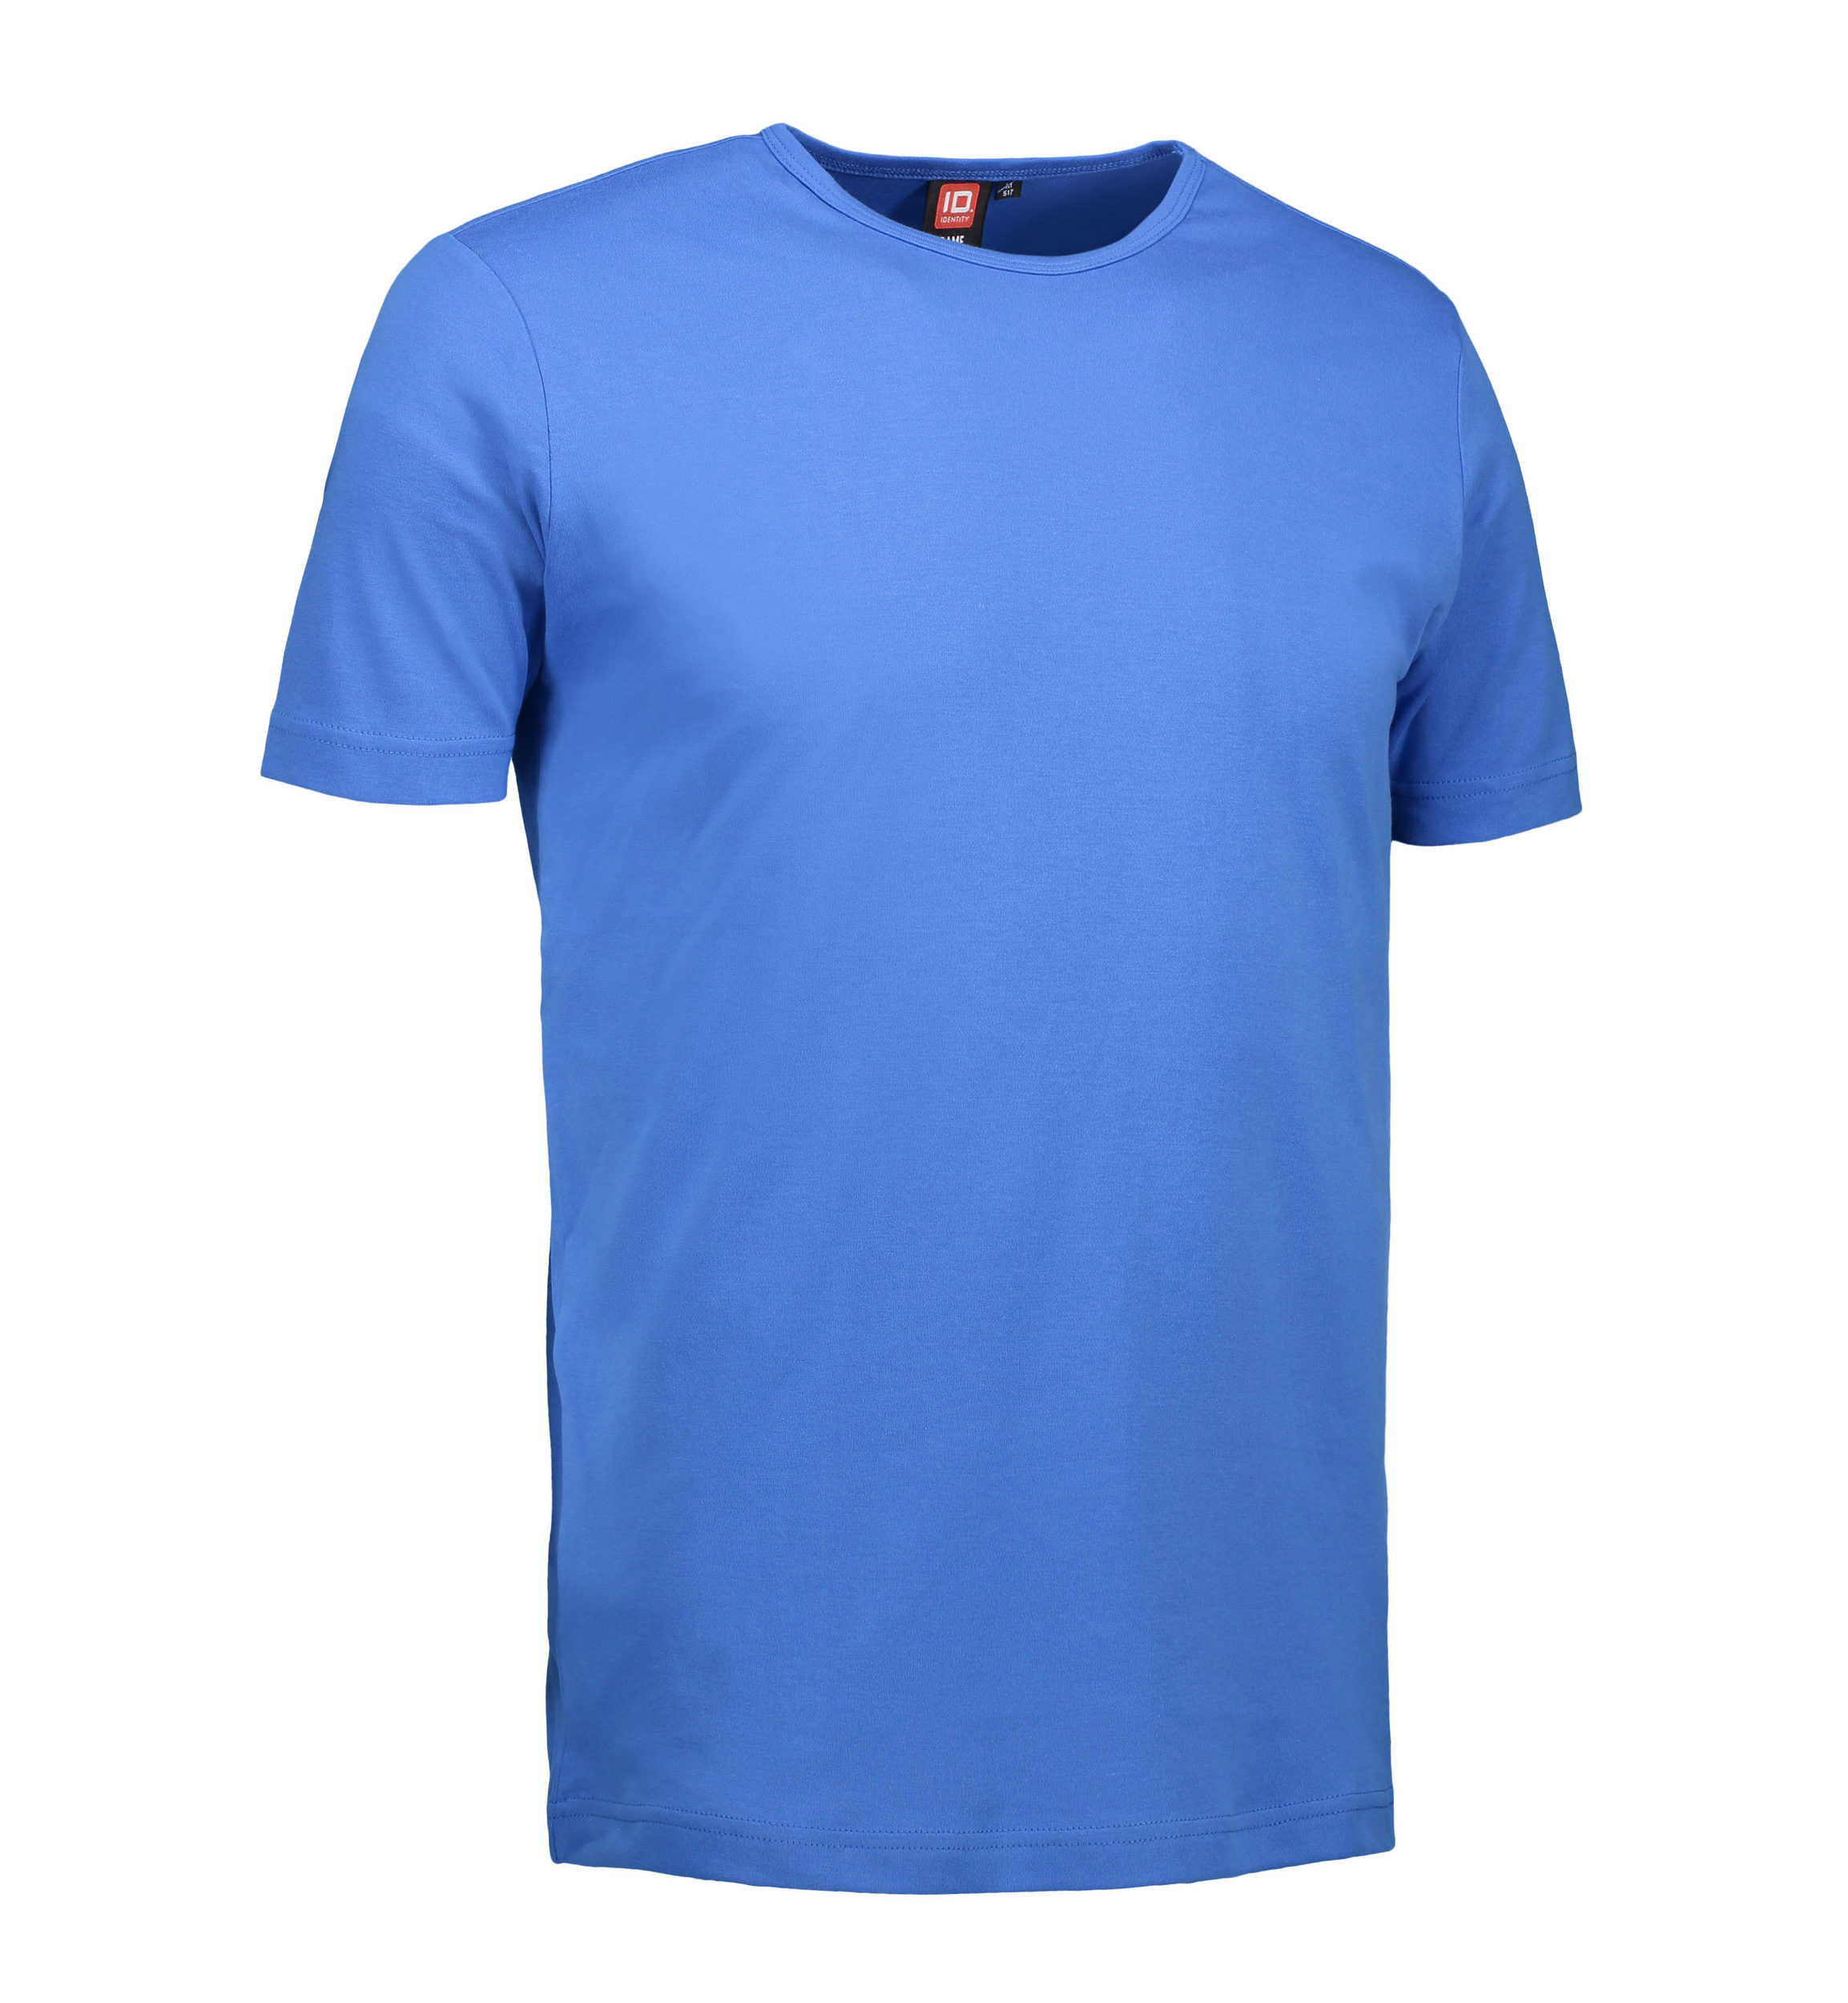 Billede af Blå t-shirt med rund hals til mænd - L hos Sygeplejebutikken.dk